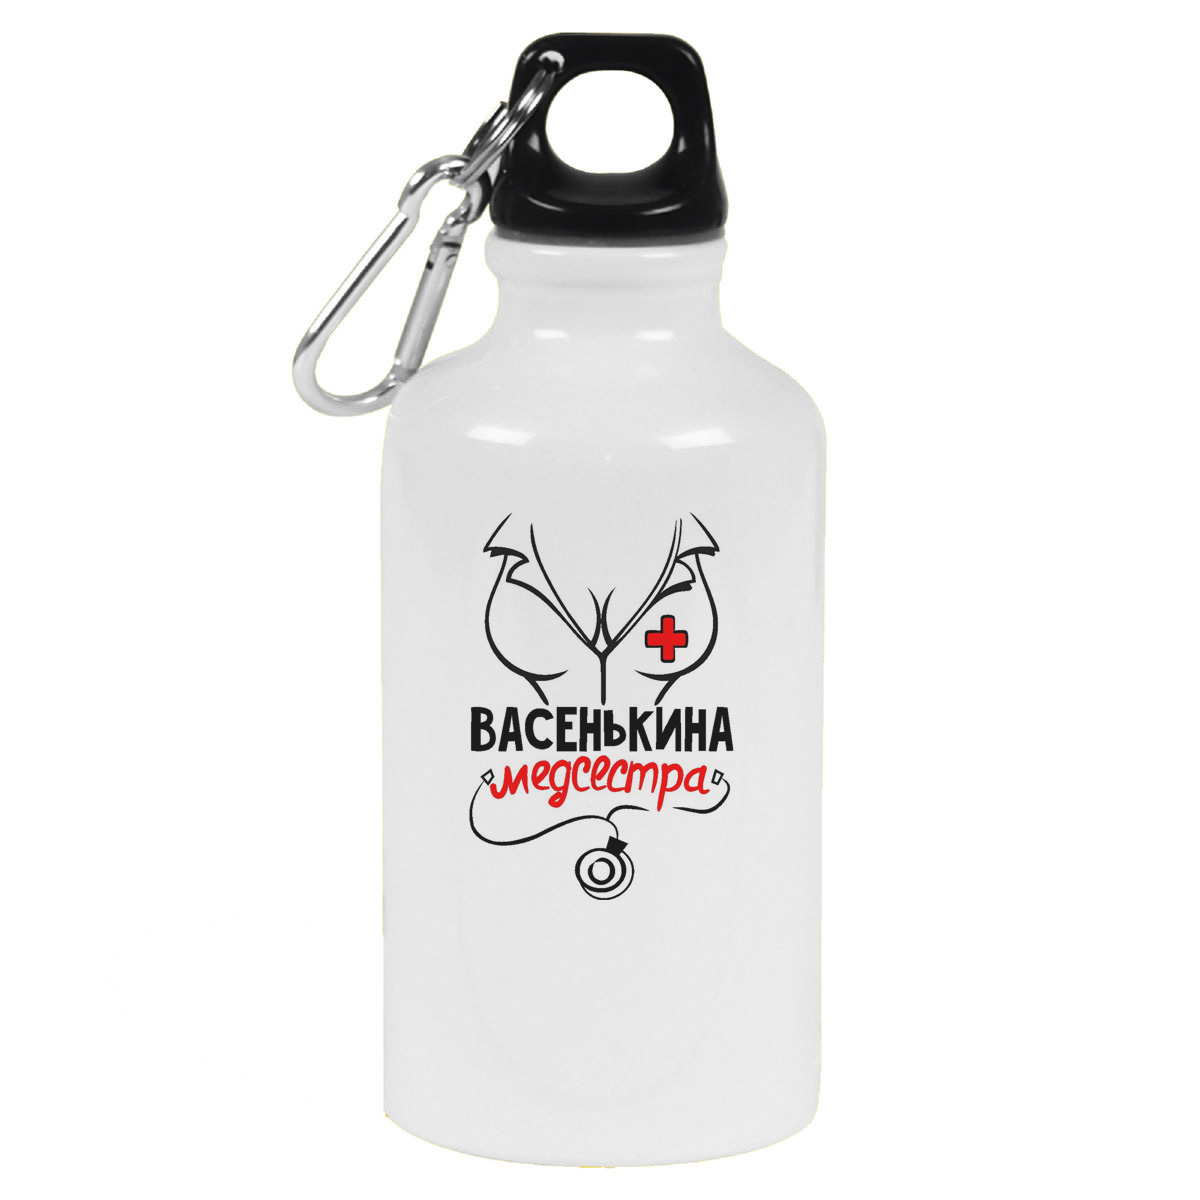 Бутылка спортивная CoolPodarok Медсестра Васенькина